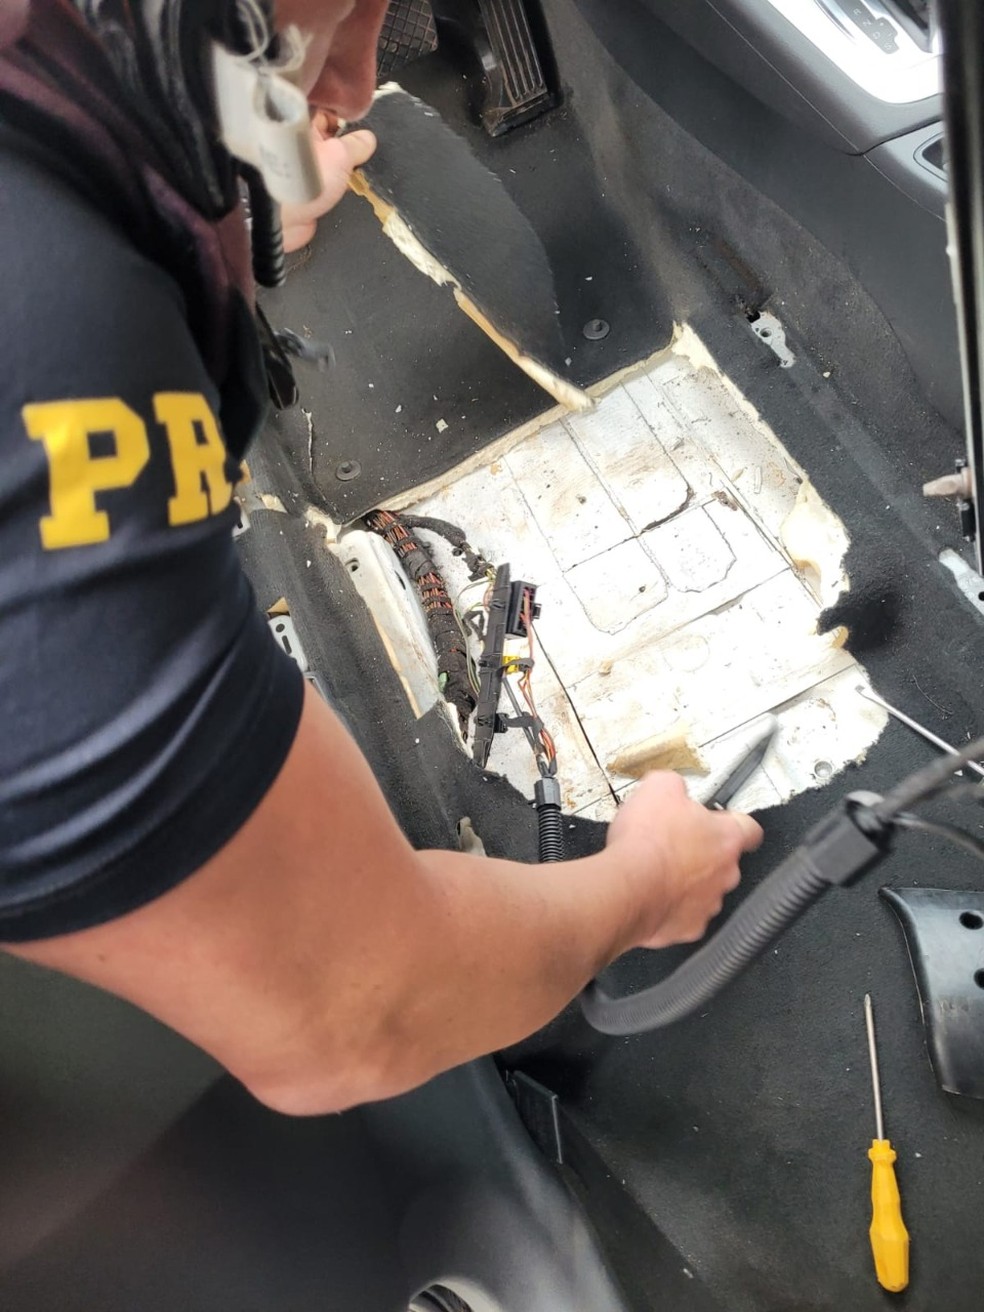 Cocaína estava em fundo falso no assoalho do carro — Foto: PRF